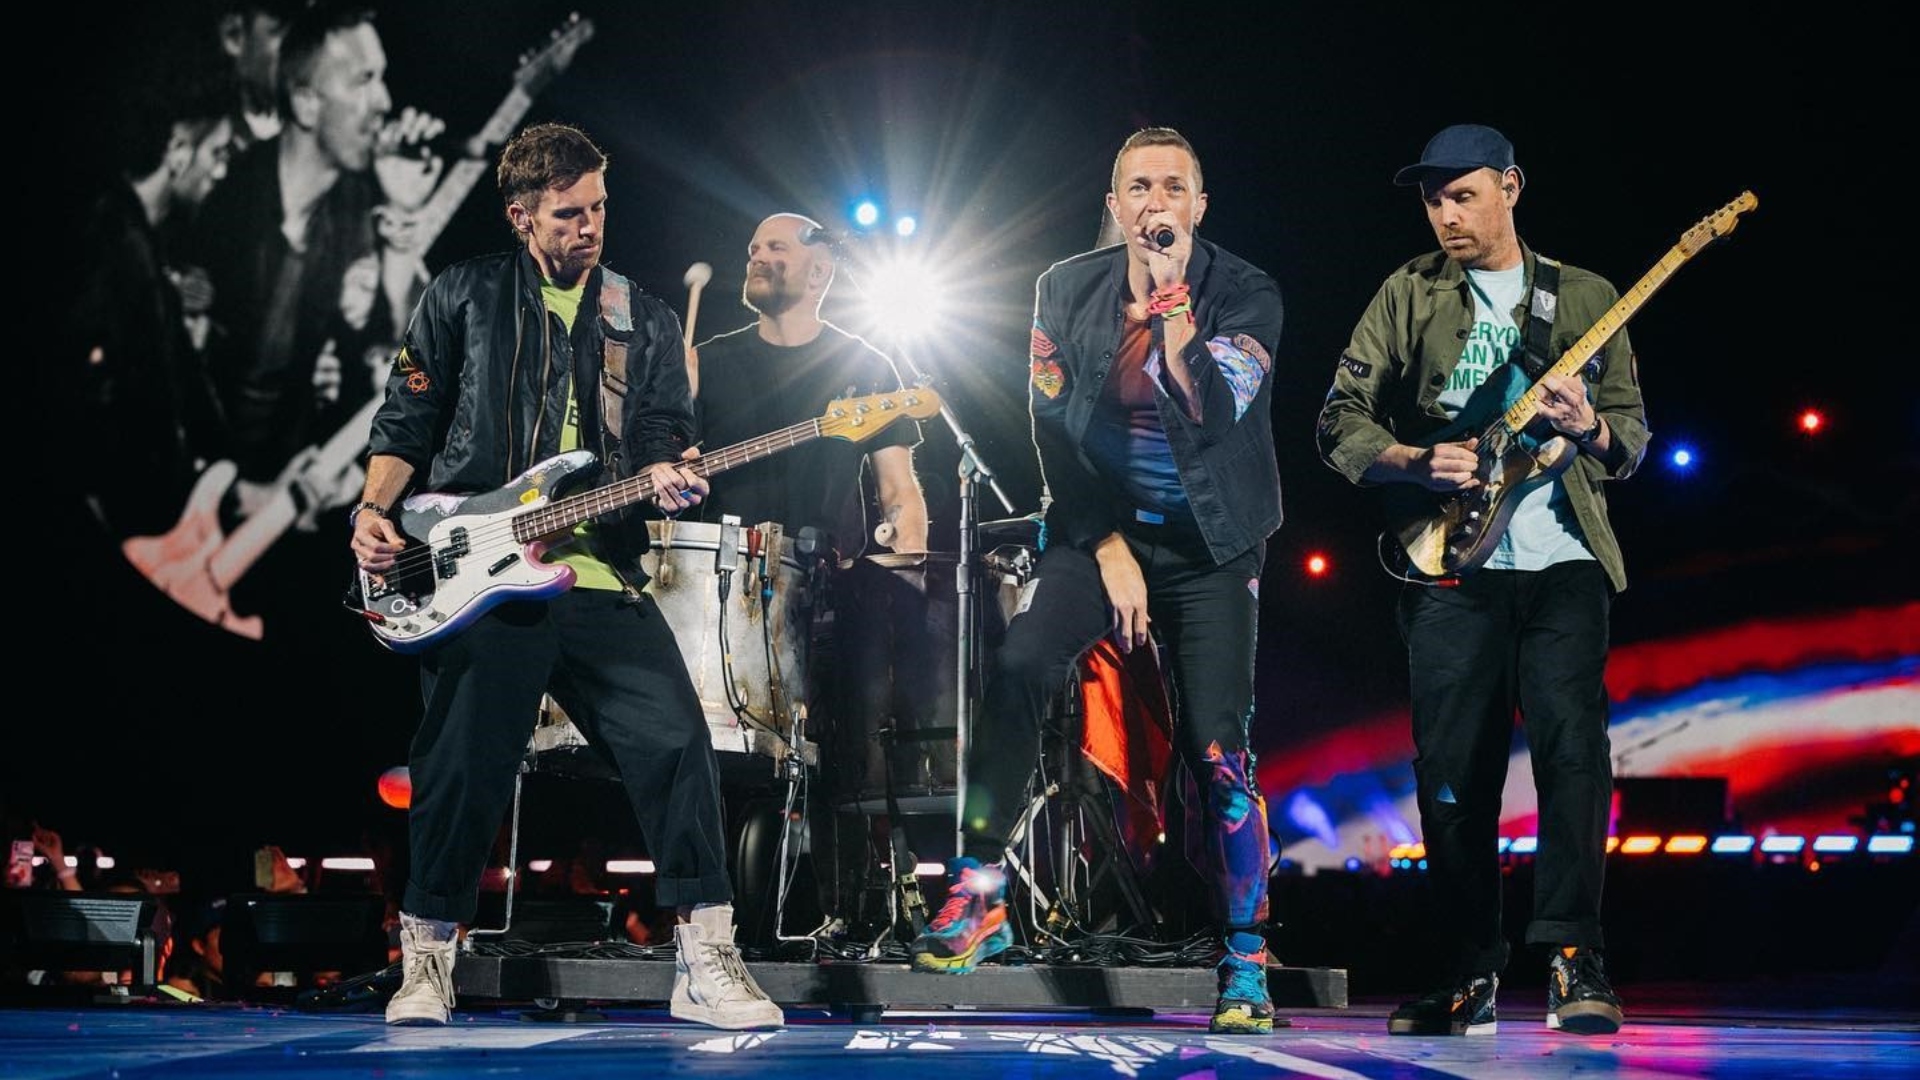 Questo sarà il tour più rivoluzionario per i Coldplay